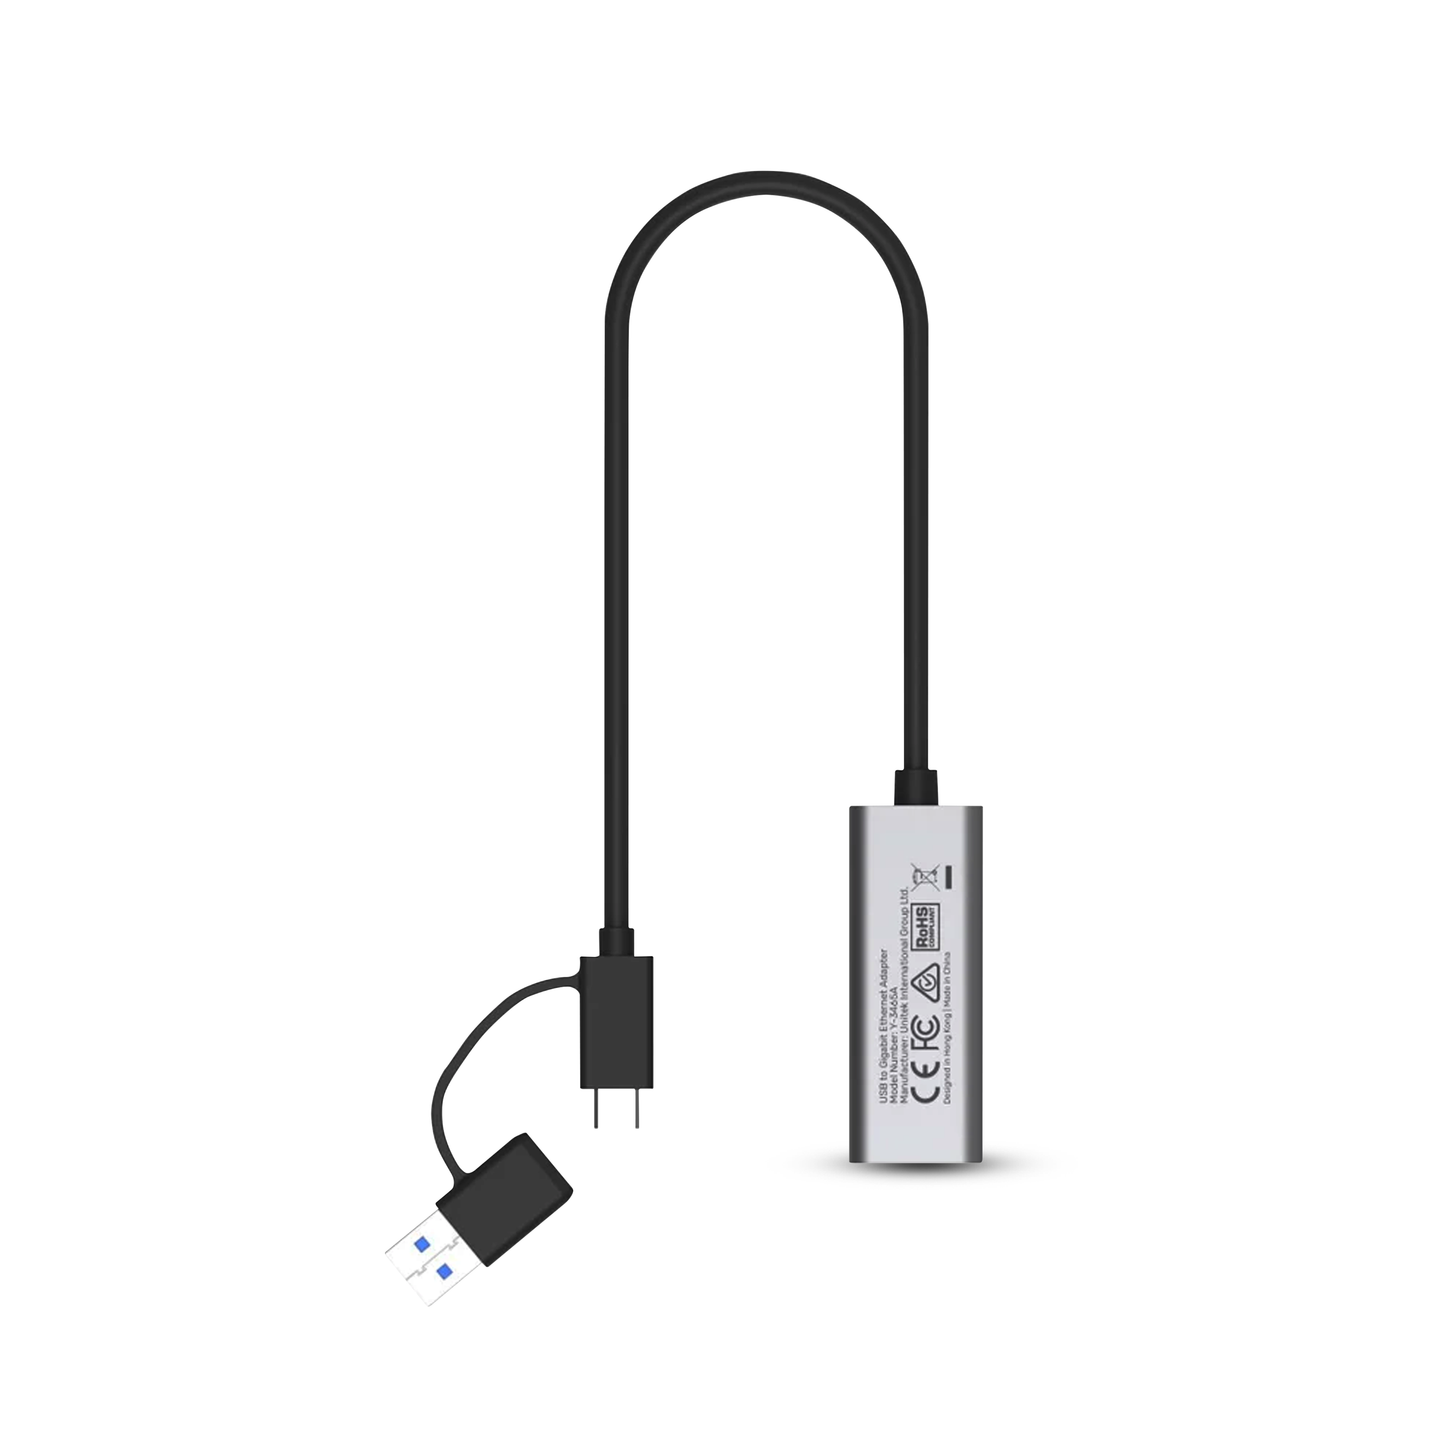 Unitek Y-3465A USB to Gigabit Ethernet Adapter (UNIY3465A)